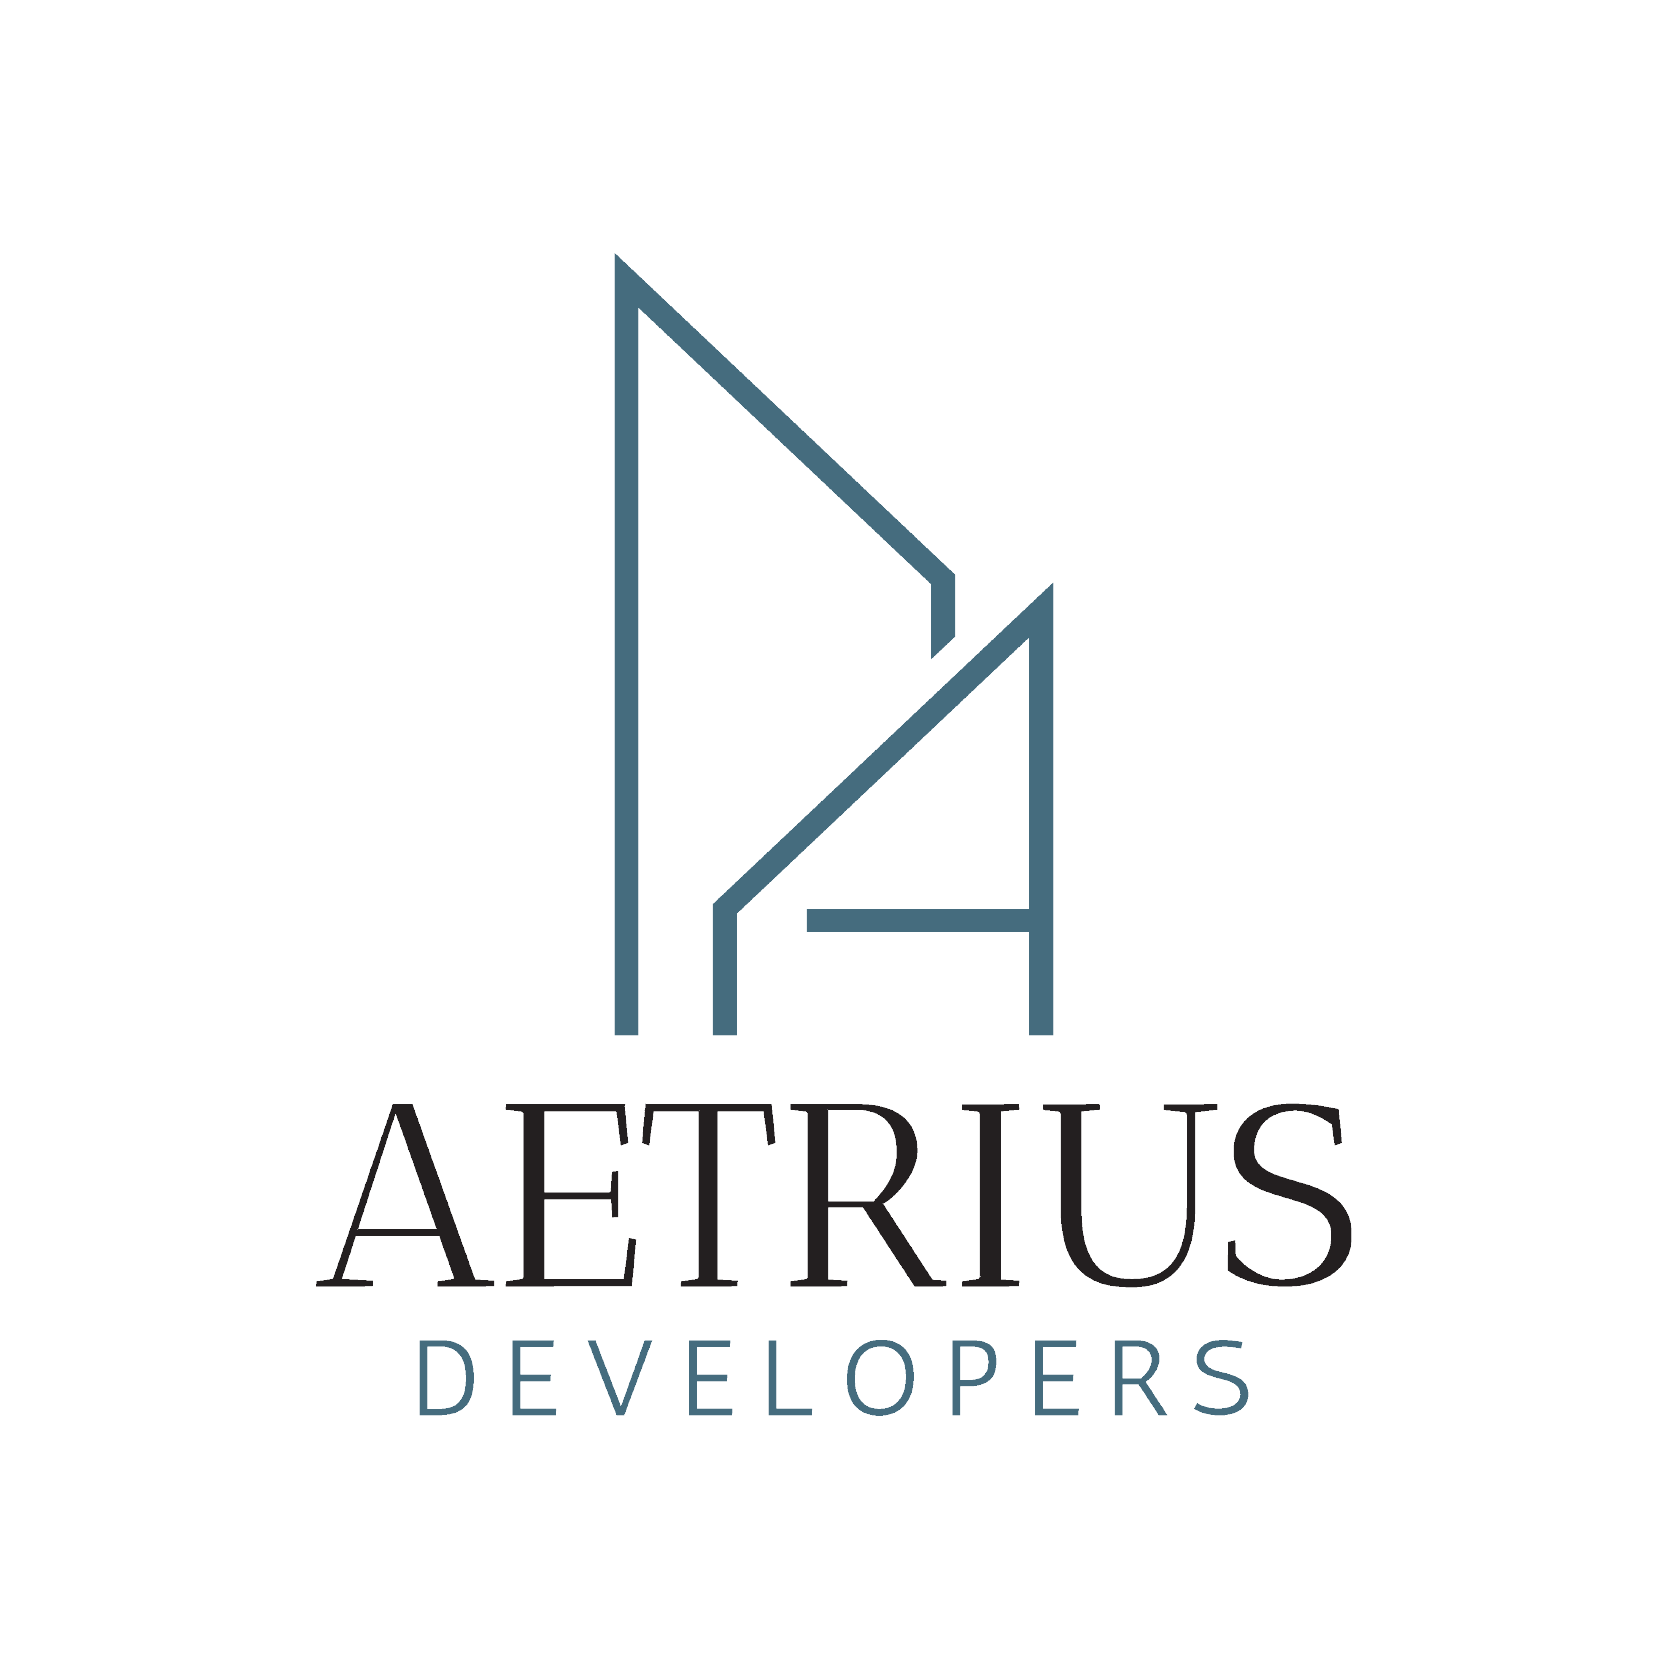 aetrius developers